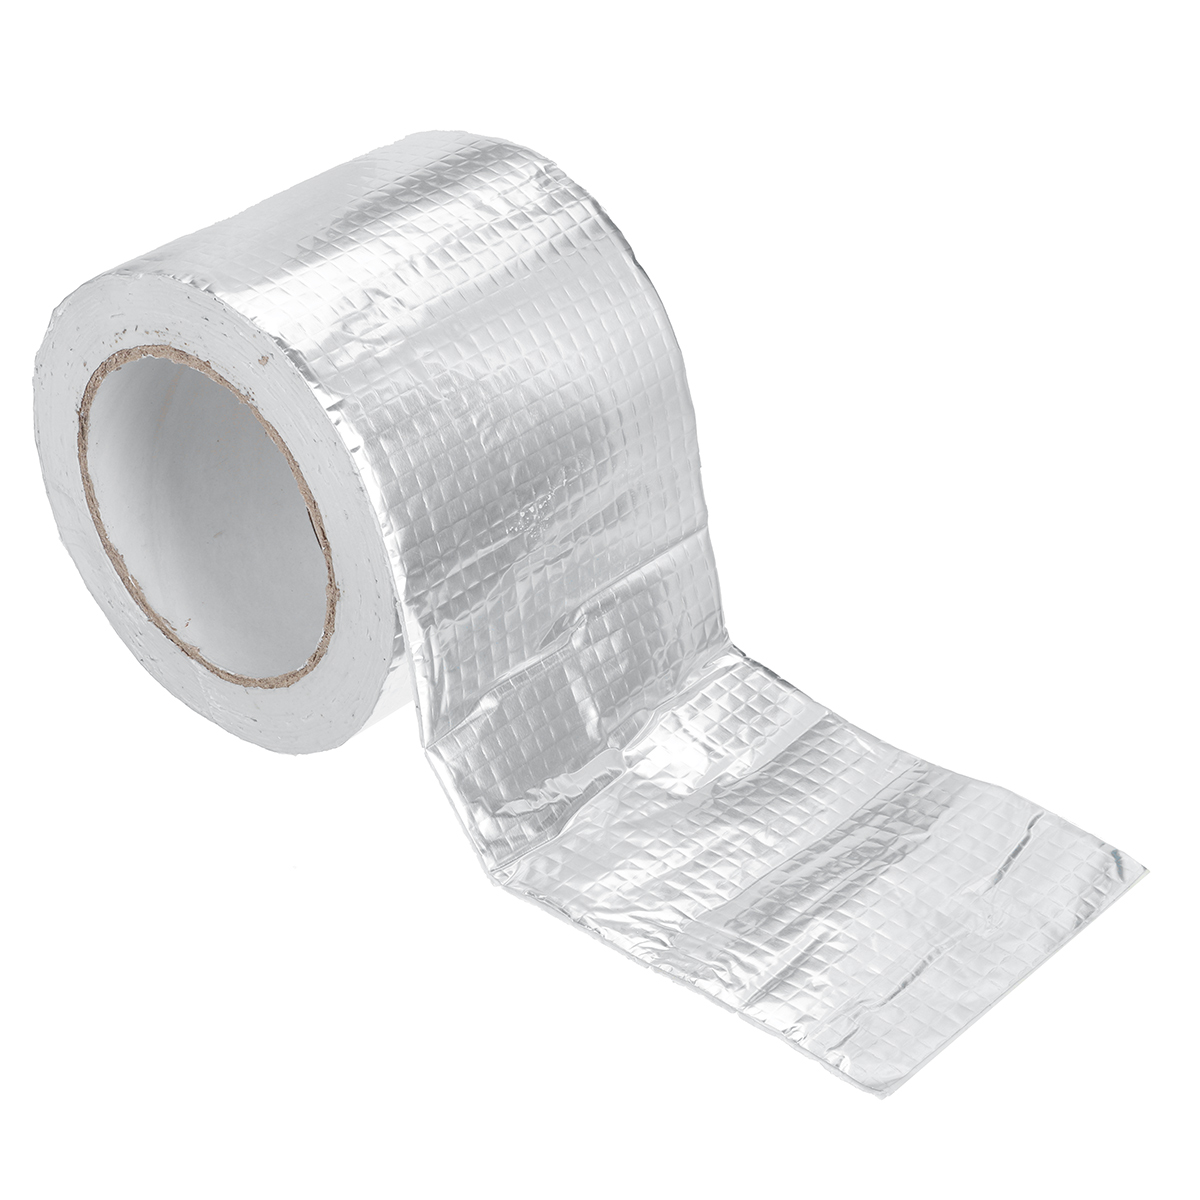 Aluminum-Foil-Butyl-Rubber-Tape-Self-Adhesive-Waterproof-Home-Roof-Pipe-Repair-Tape-1681292-6